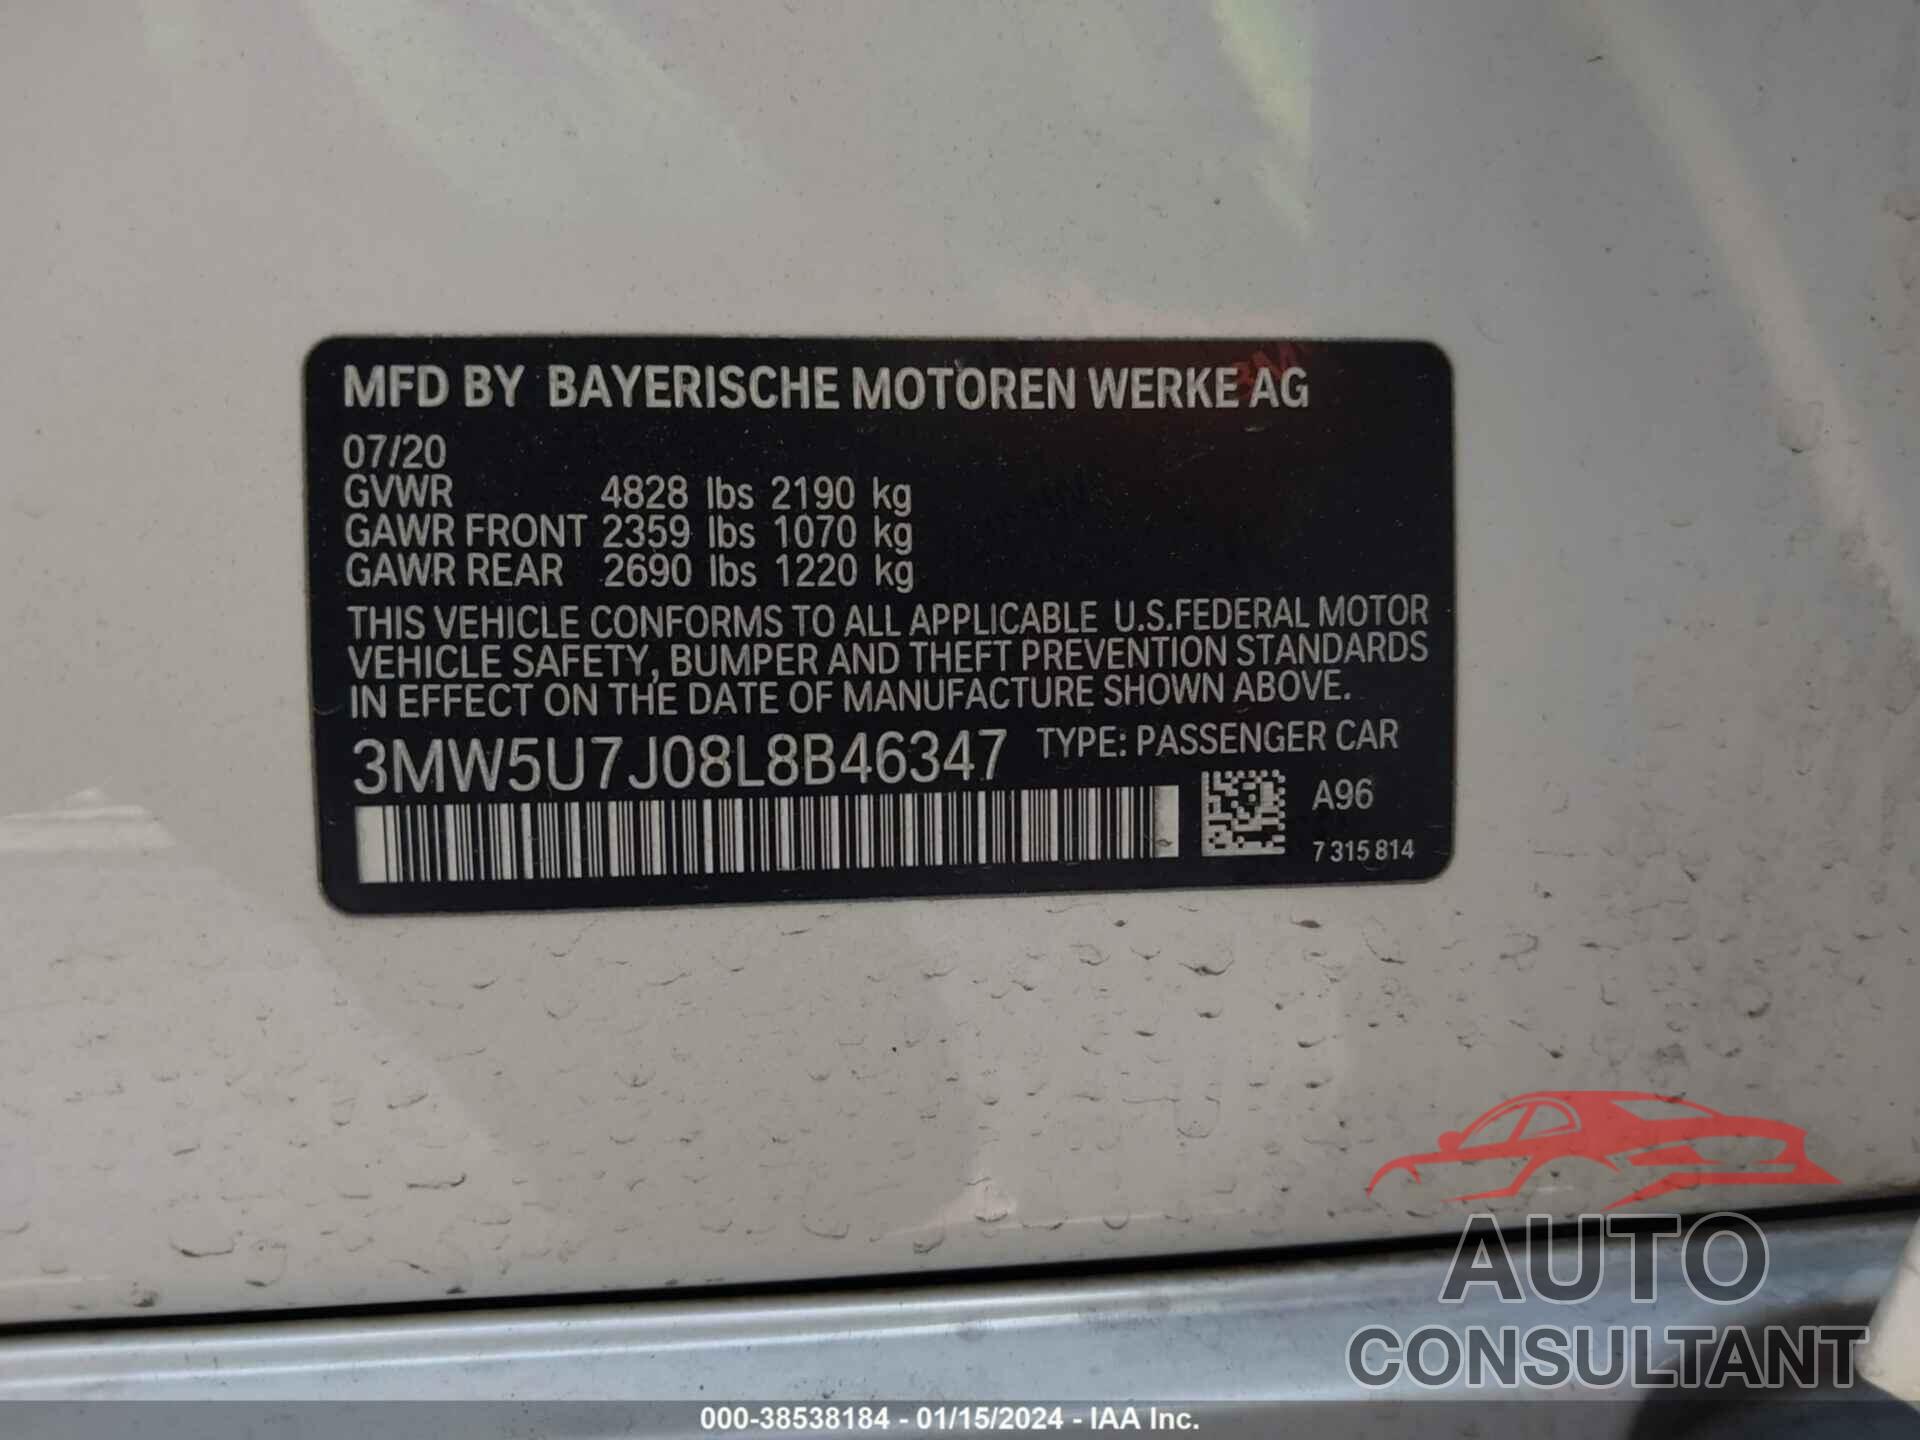 BMW 3 SERIES 2020 - 3MW5U7J08L8B46347